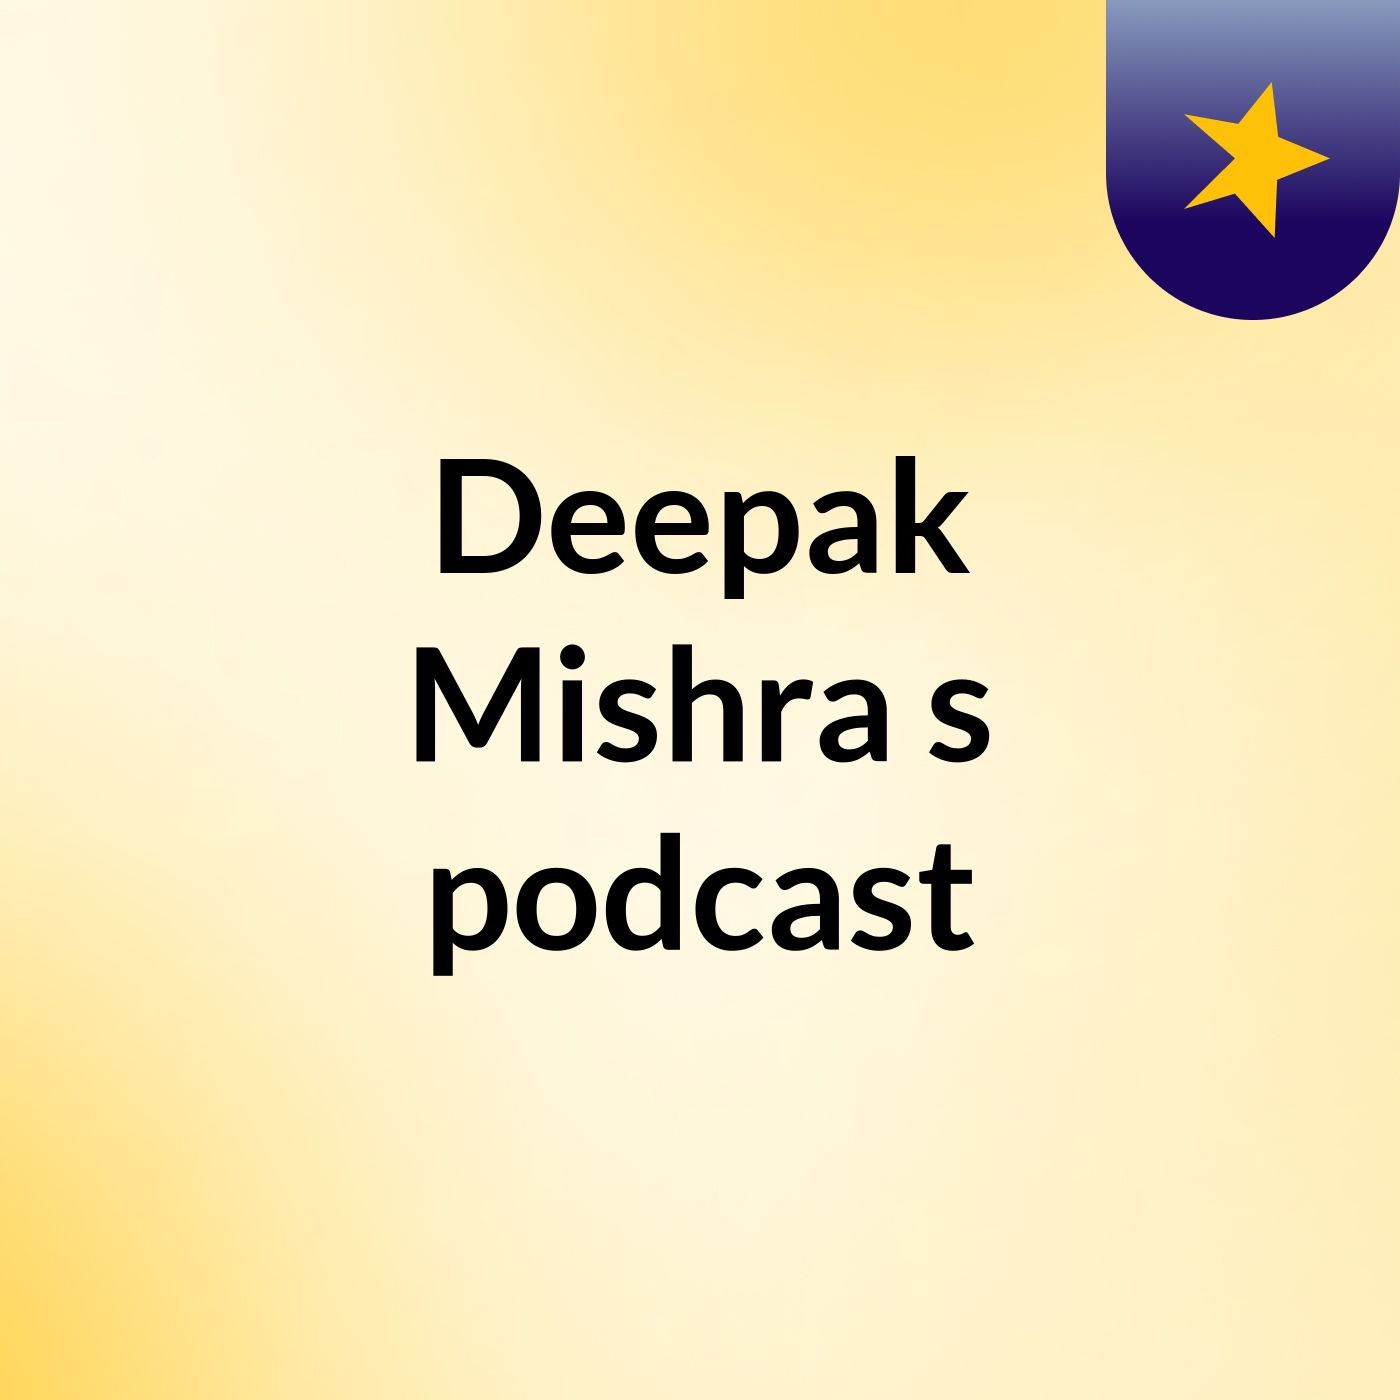 Deepak Mishra's podcast